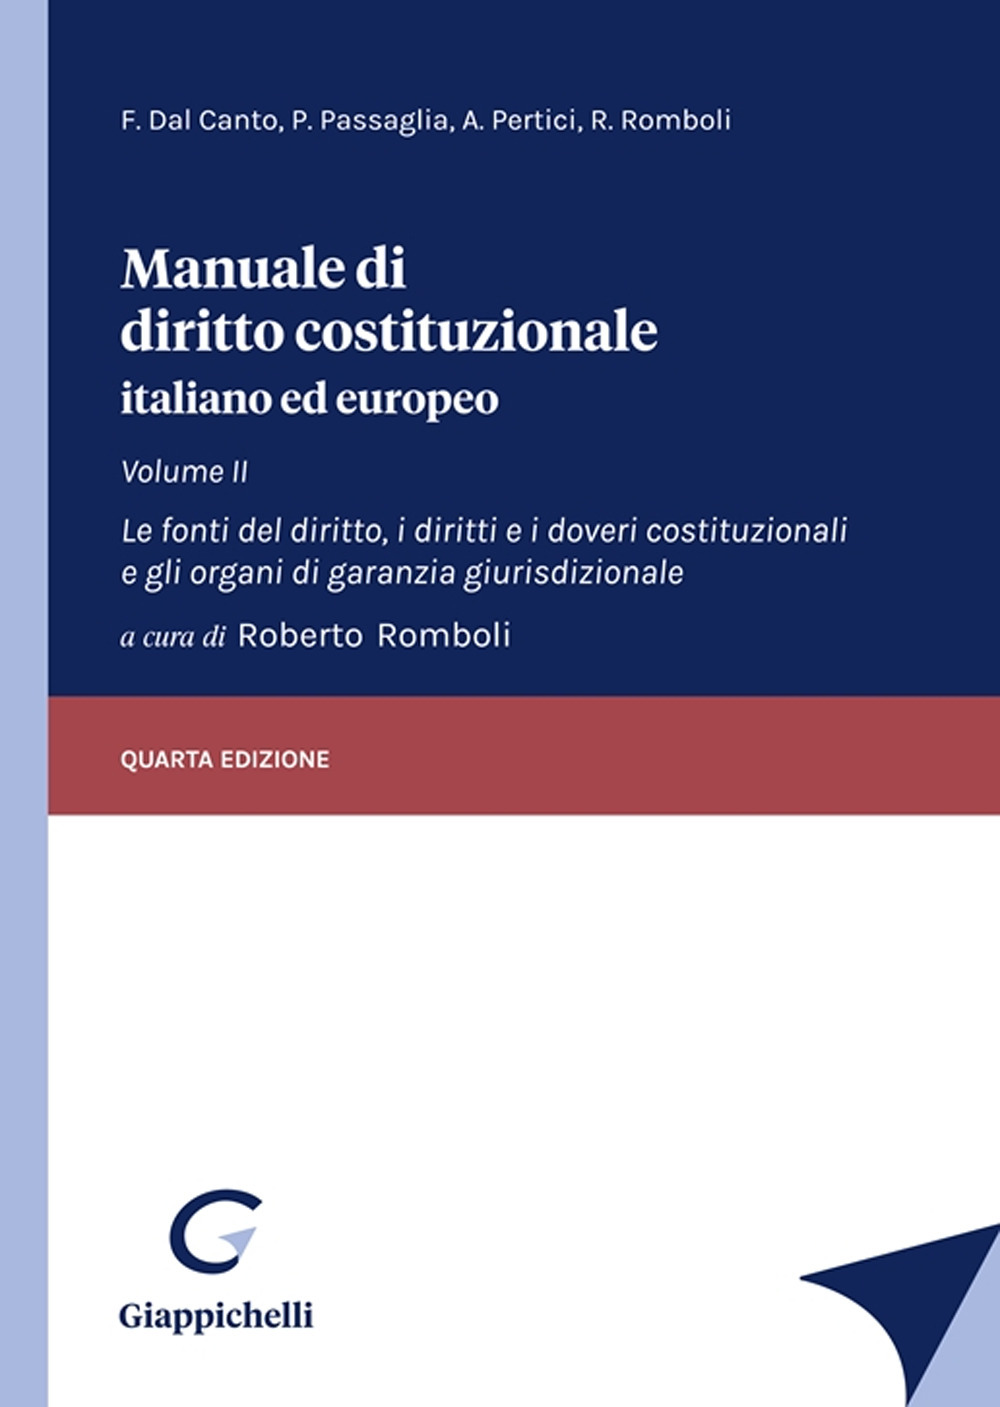 Manuale di diritto costituzionale italiano ed europeo. Vol. 2: Le fonti del diritto, i diritti e i doveri costituzionali e gli organi di garanzia giurisdizionale